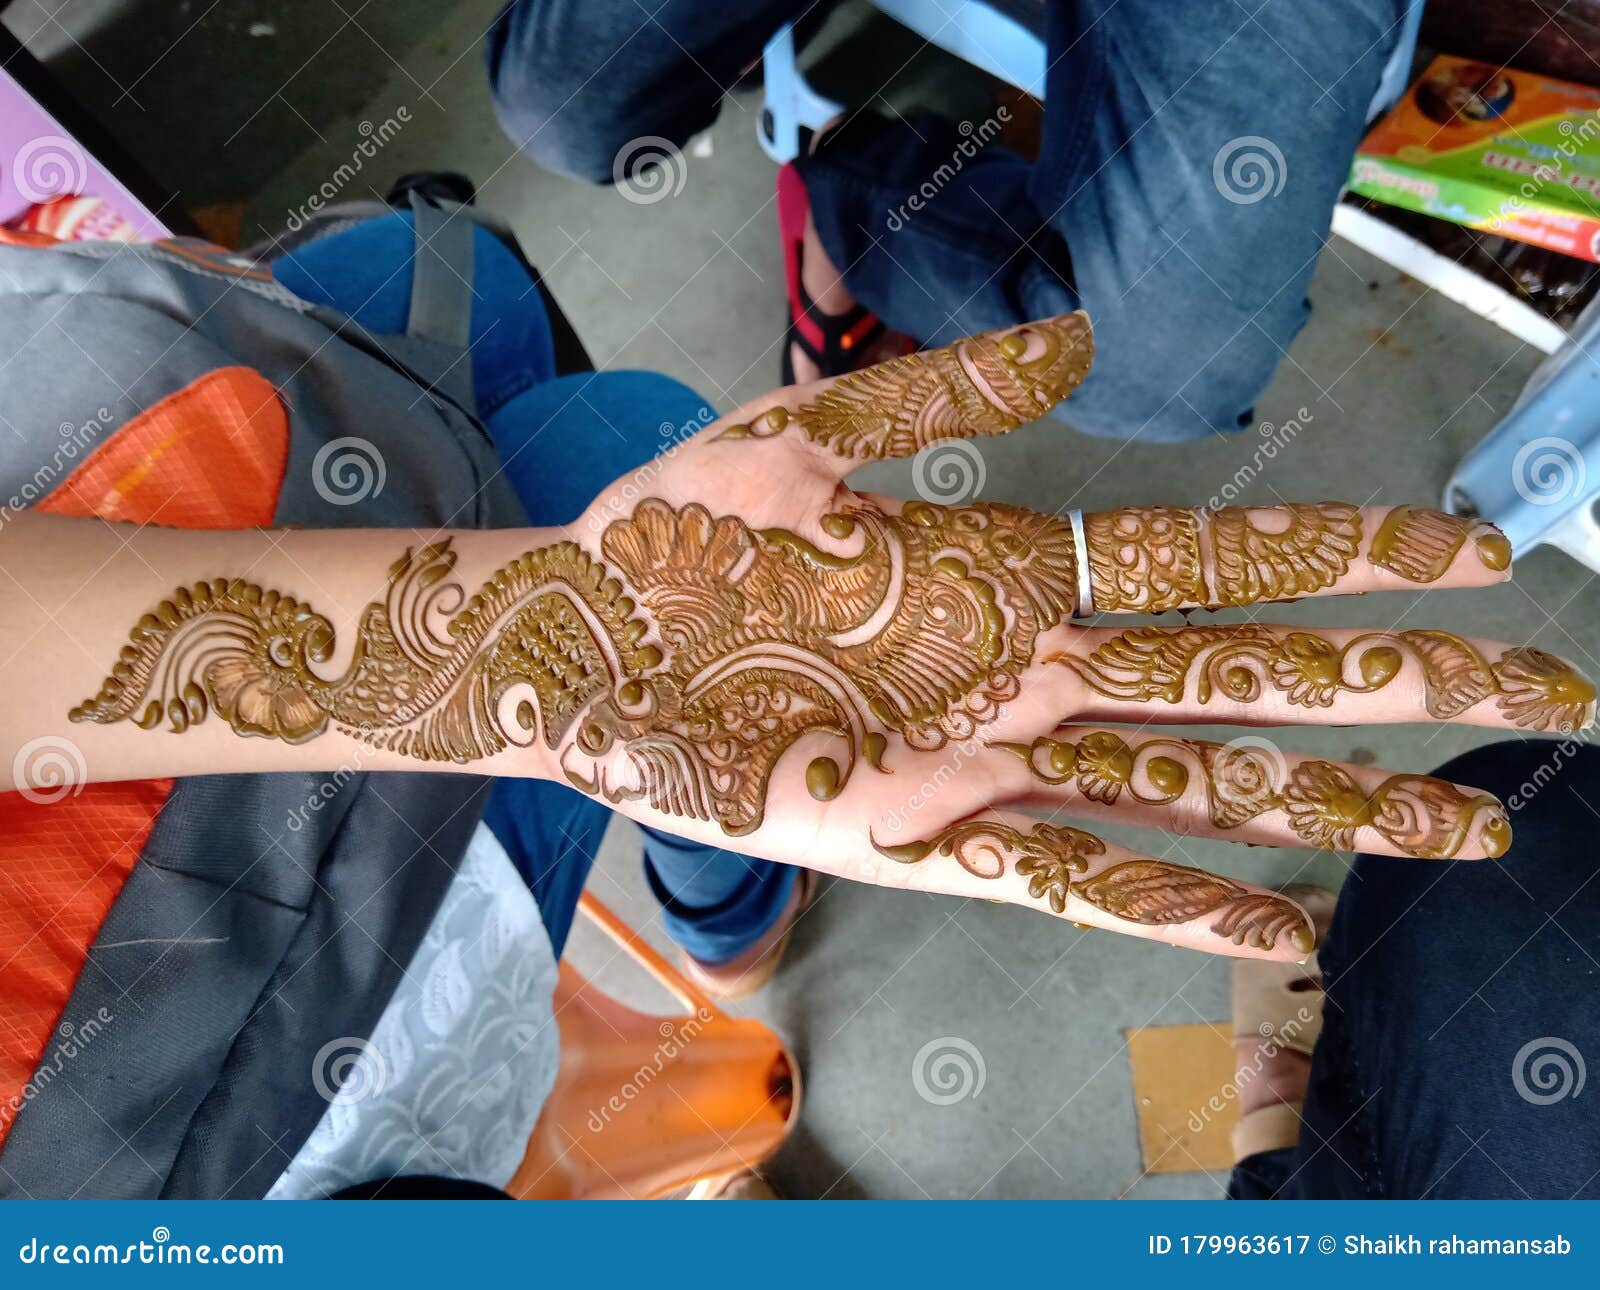 Sawan Mehndi Designs:हाथों में मेहंदी लगाकर करें महादेव की पूजा, यहां देखें  सिंपल और खूबसूरत डिजाइन - Sawan Mehndi Designs Simple Mehndi Design For  Front Hand In Sawan 2023 - Amar Ujala